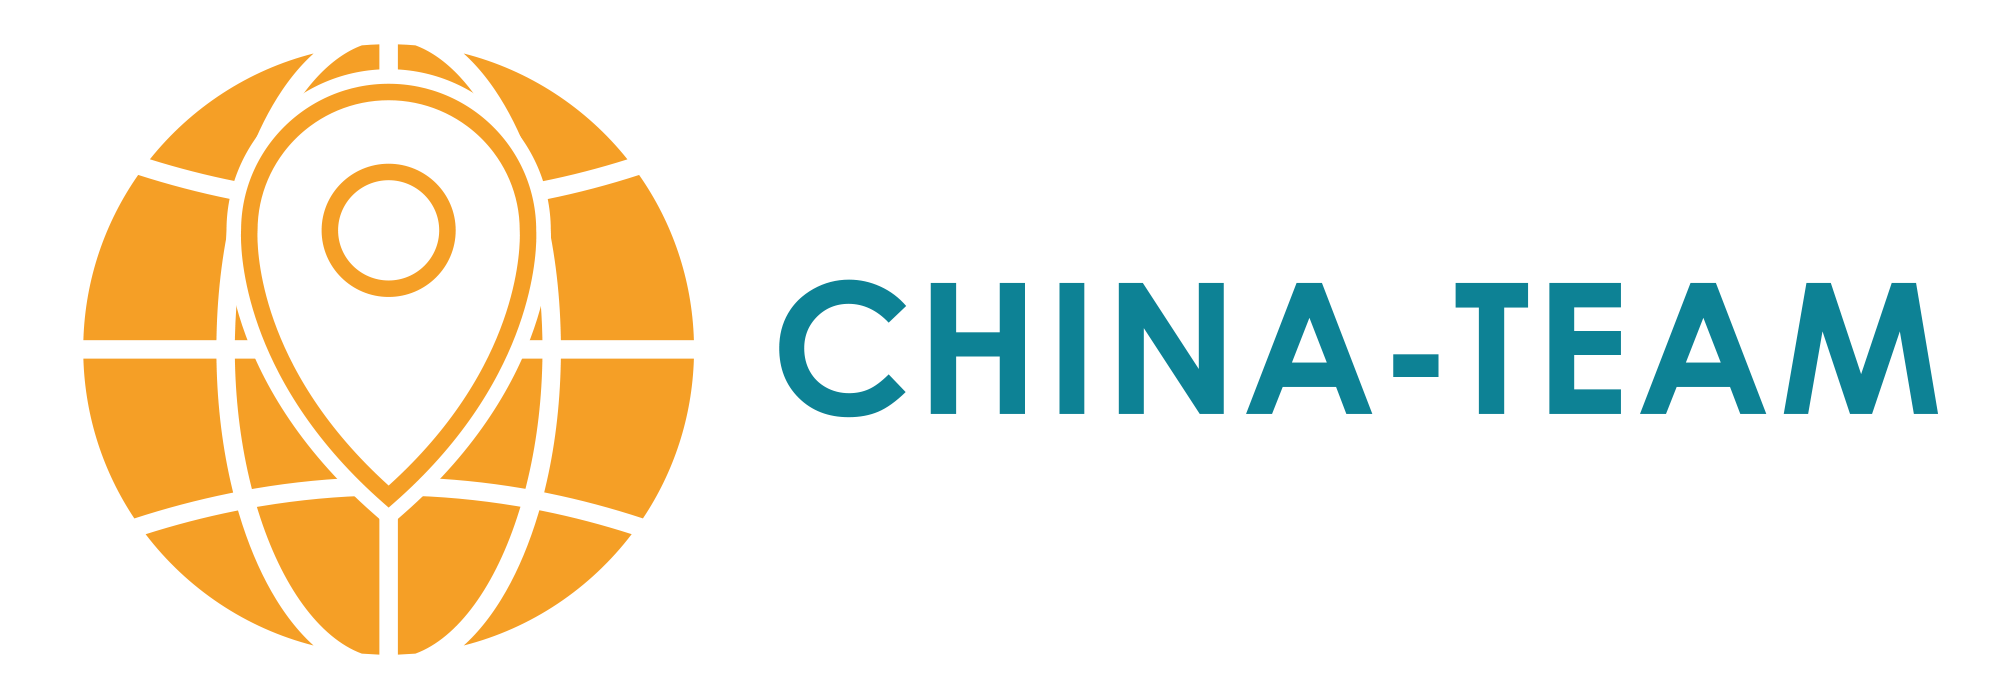 China-Team